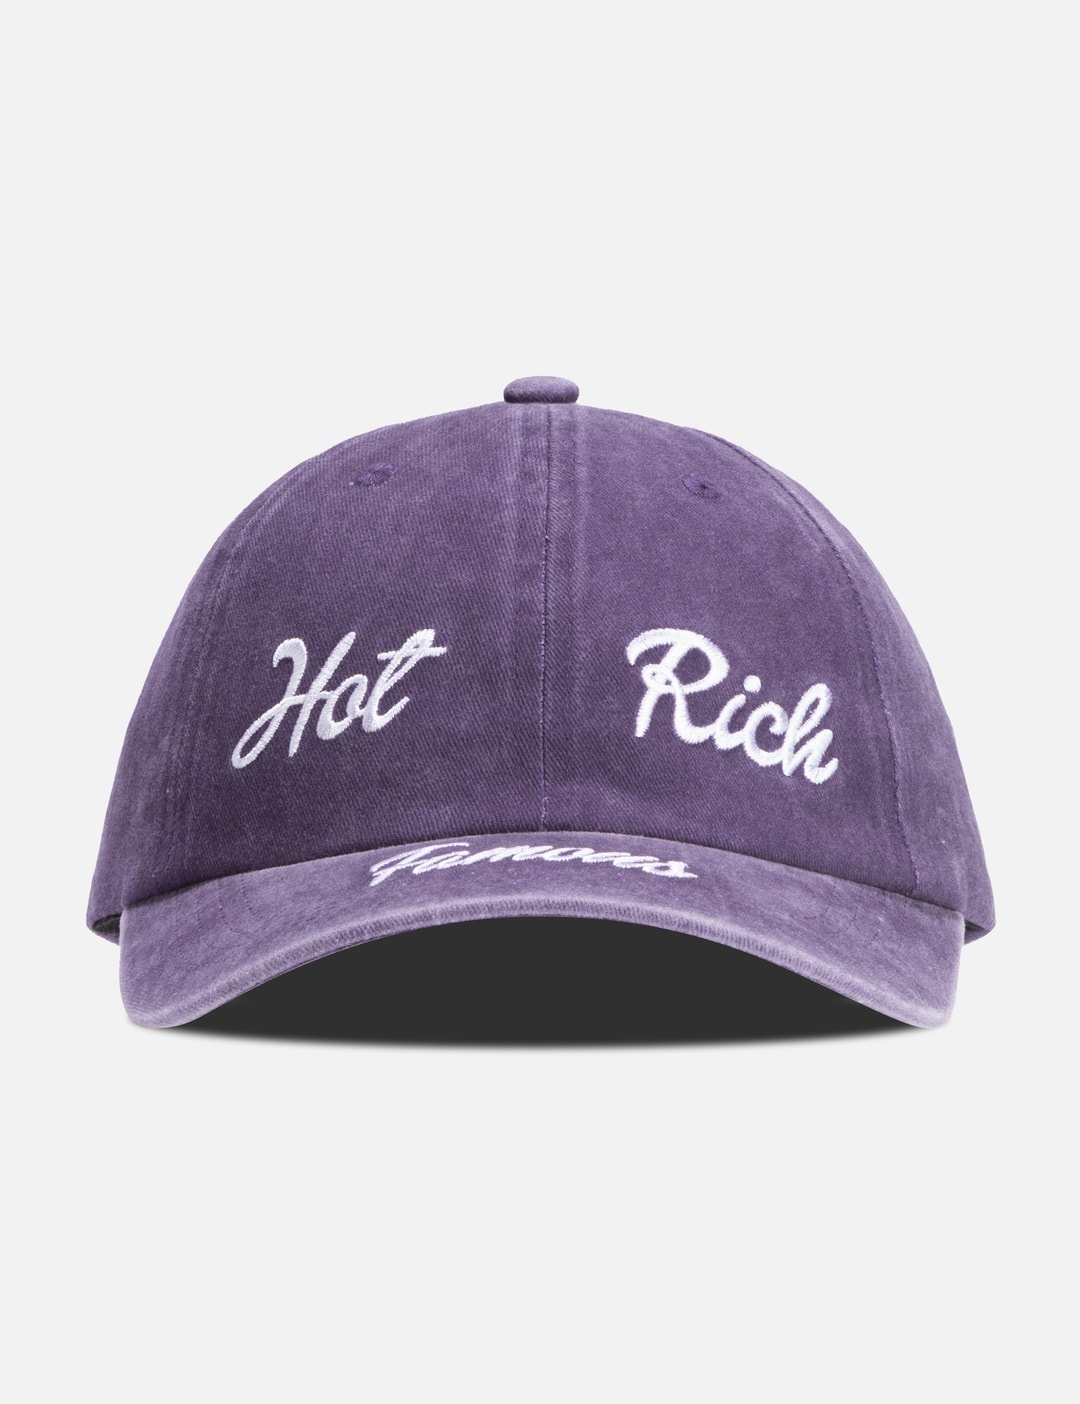 HOT RICH FAMOUS CAP - 1